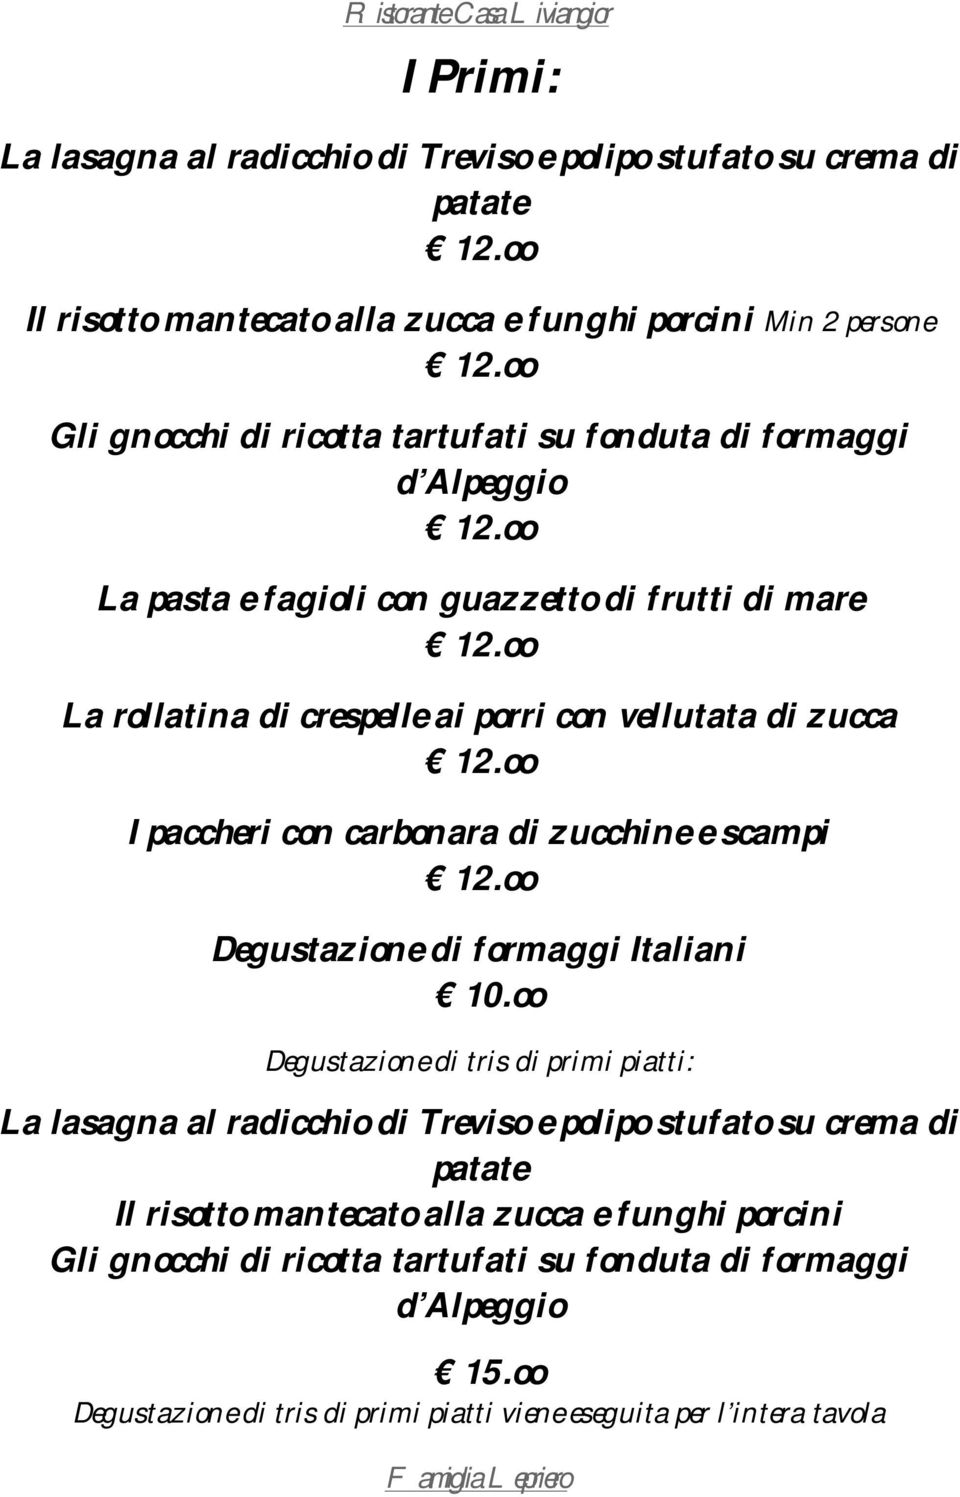 zucchine e scampi Degustazione di formaggi Italiani 10.